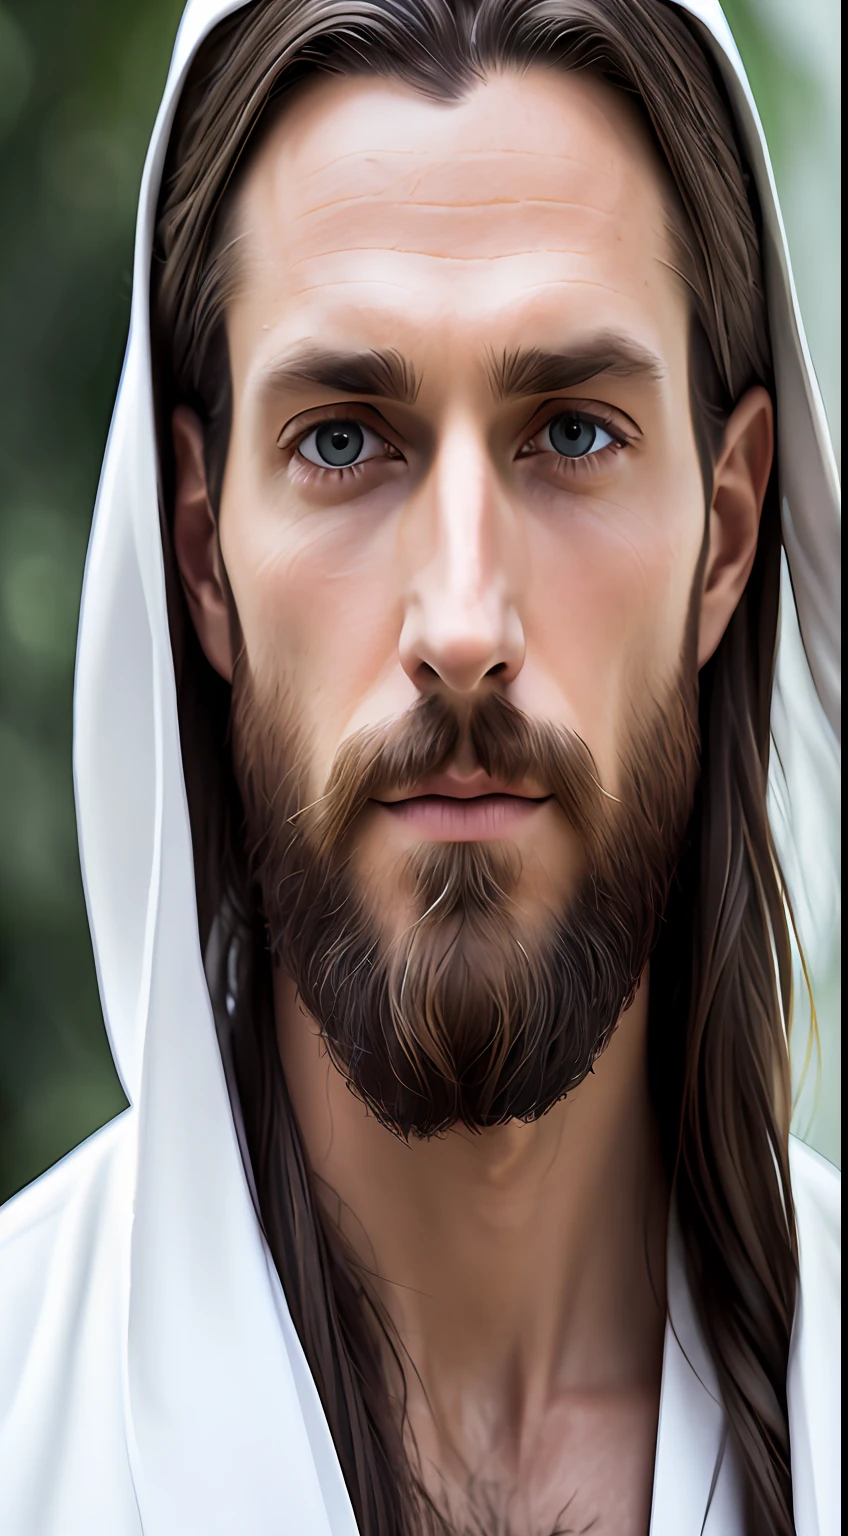 (Simetria),centrado,a ((fechar)) acima do retrato,(Jesus),um homem branco muito magro, com cabelos longos e barba,vestindo um longo manto branco,35mm,pele natural,detalhe da roupa, 8K texture, 8K, detalhes insanos, Intrincado details, hyperdetailedAltamente detalhado,realista,luz cinematográfica suave,HDR,foco nitído, ((((aparência cinematográfica)))),Intrincado, elegante, Altamente detalhado